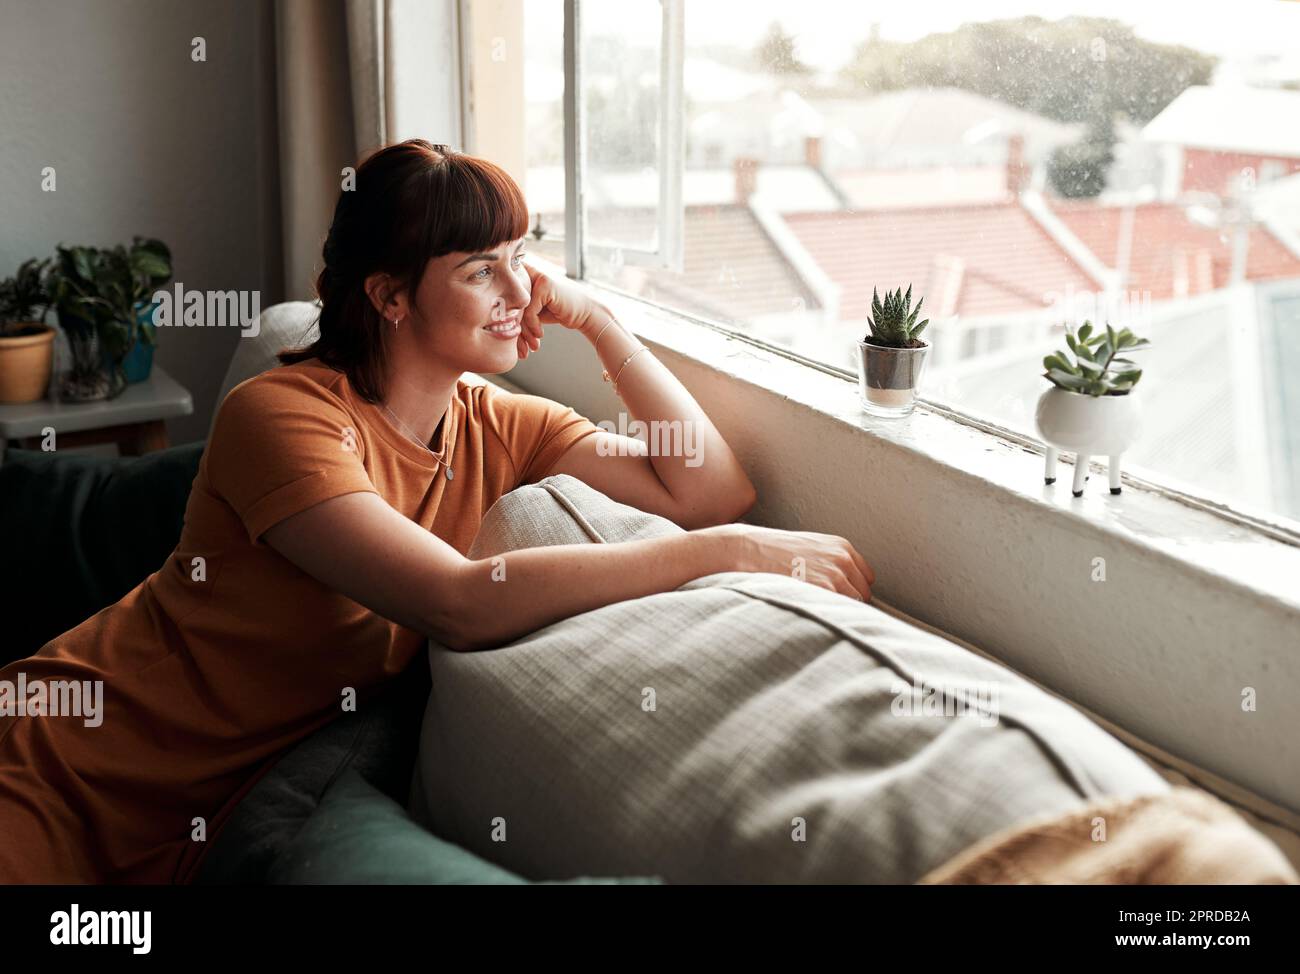 Es ist ein schöner Tag draußen. Eine attraktive junge Frau, die sich zu Hause auf dem Sofa entspannt. Stockfoto